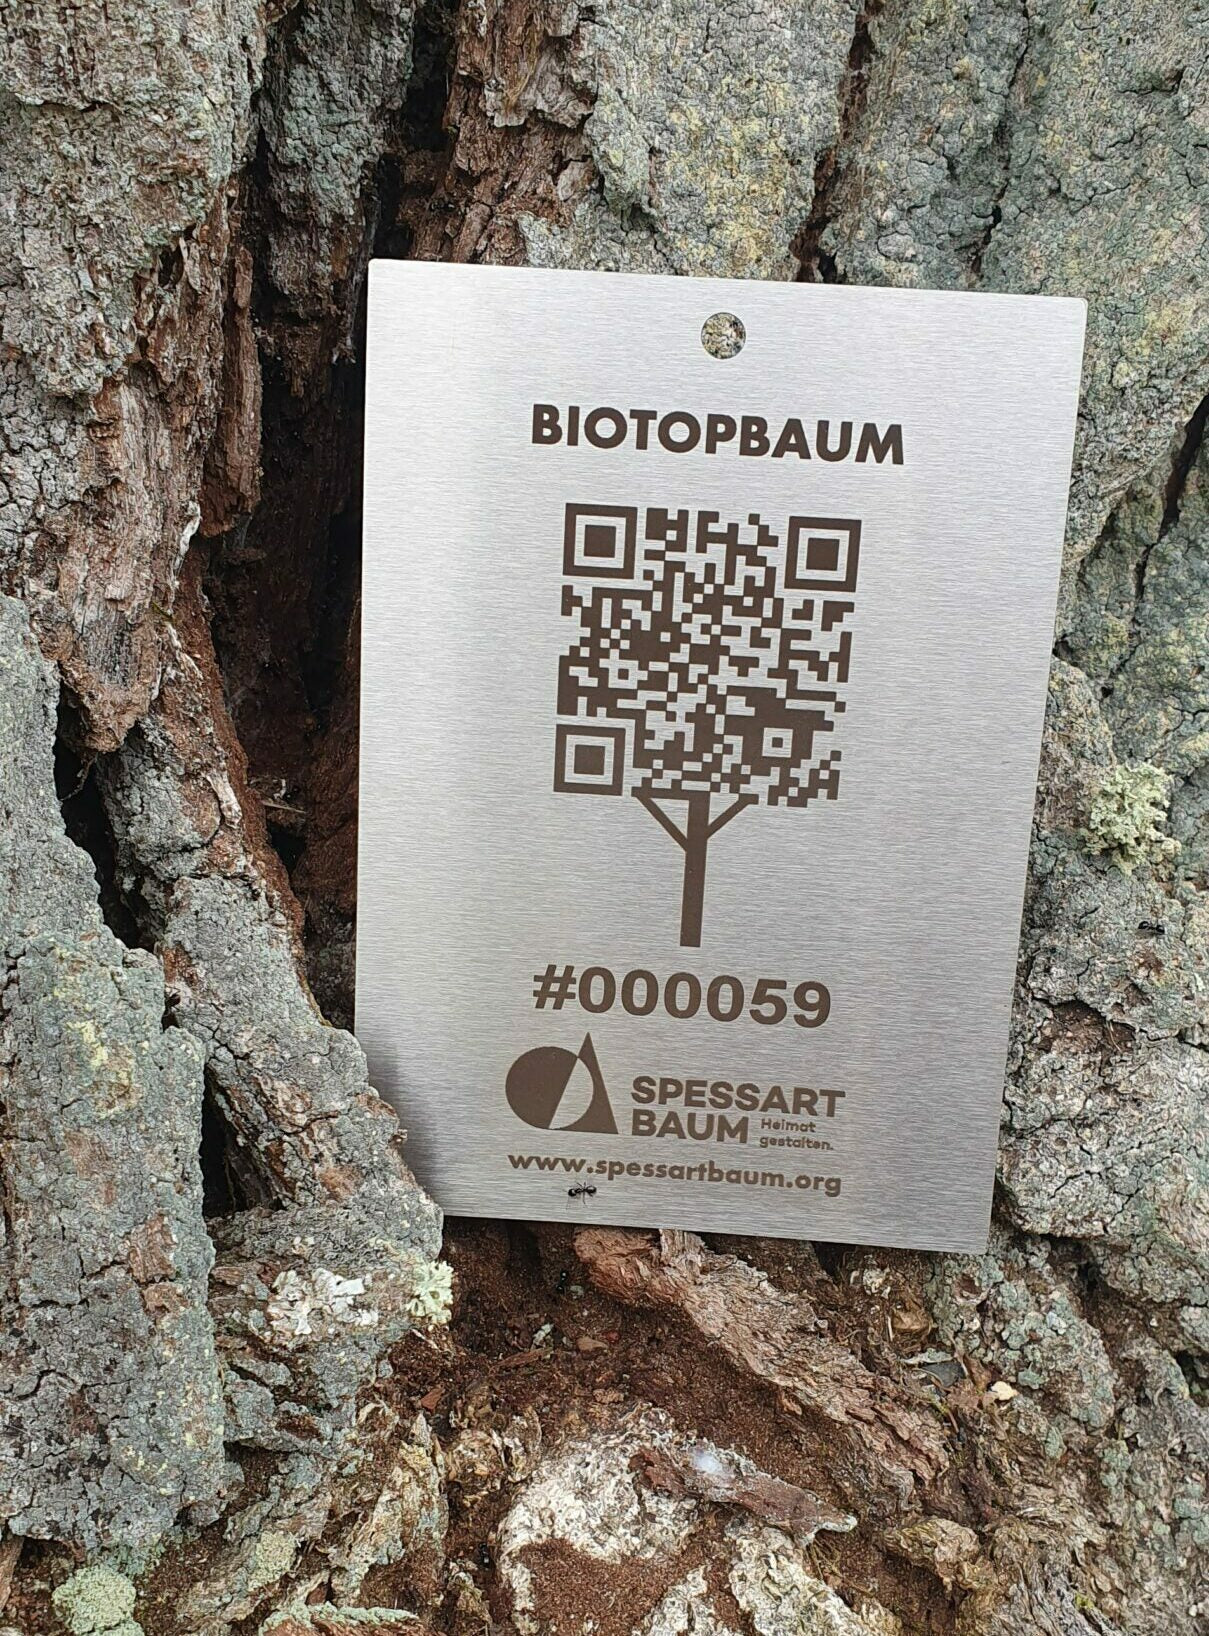 Biotopbaum Patenschaft